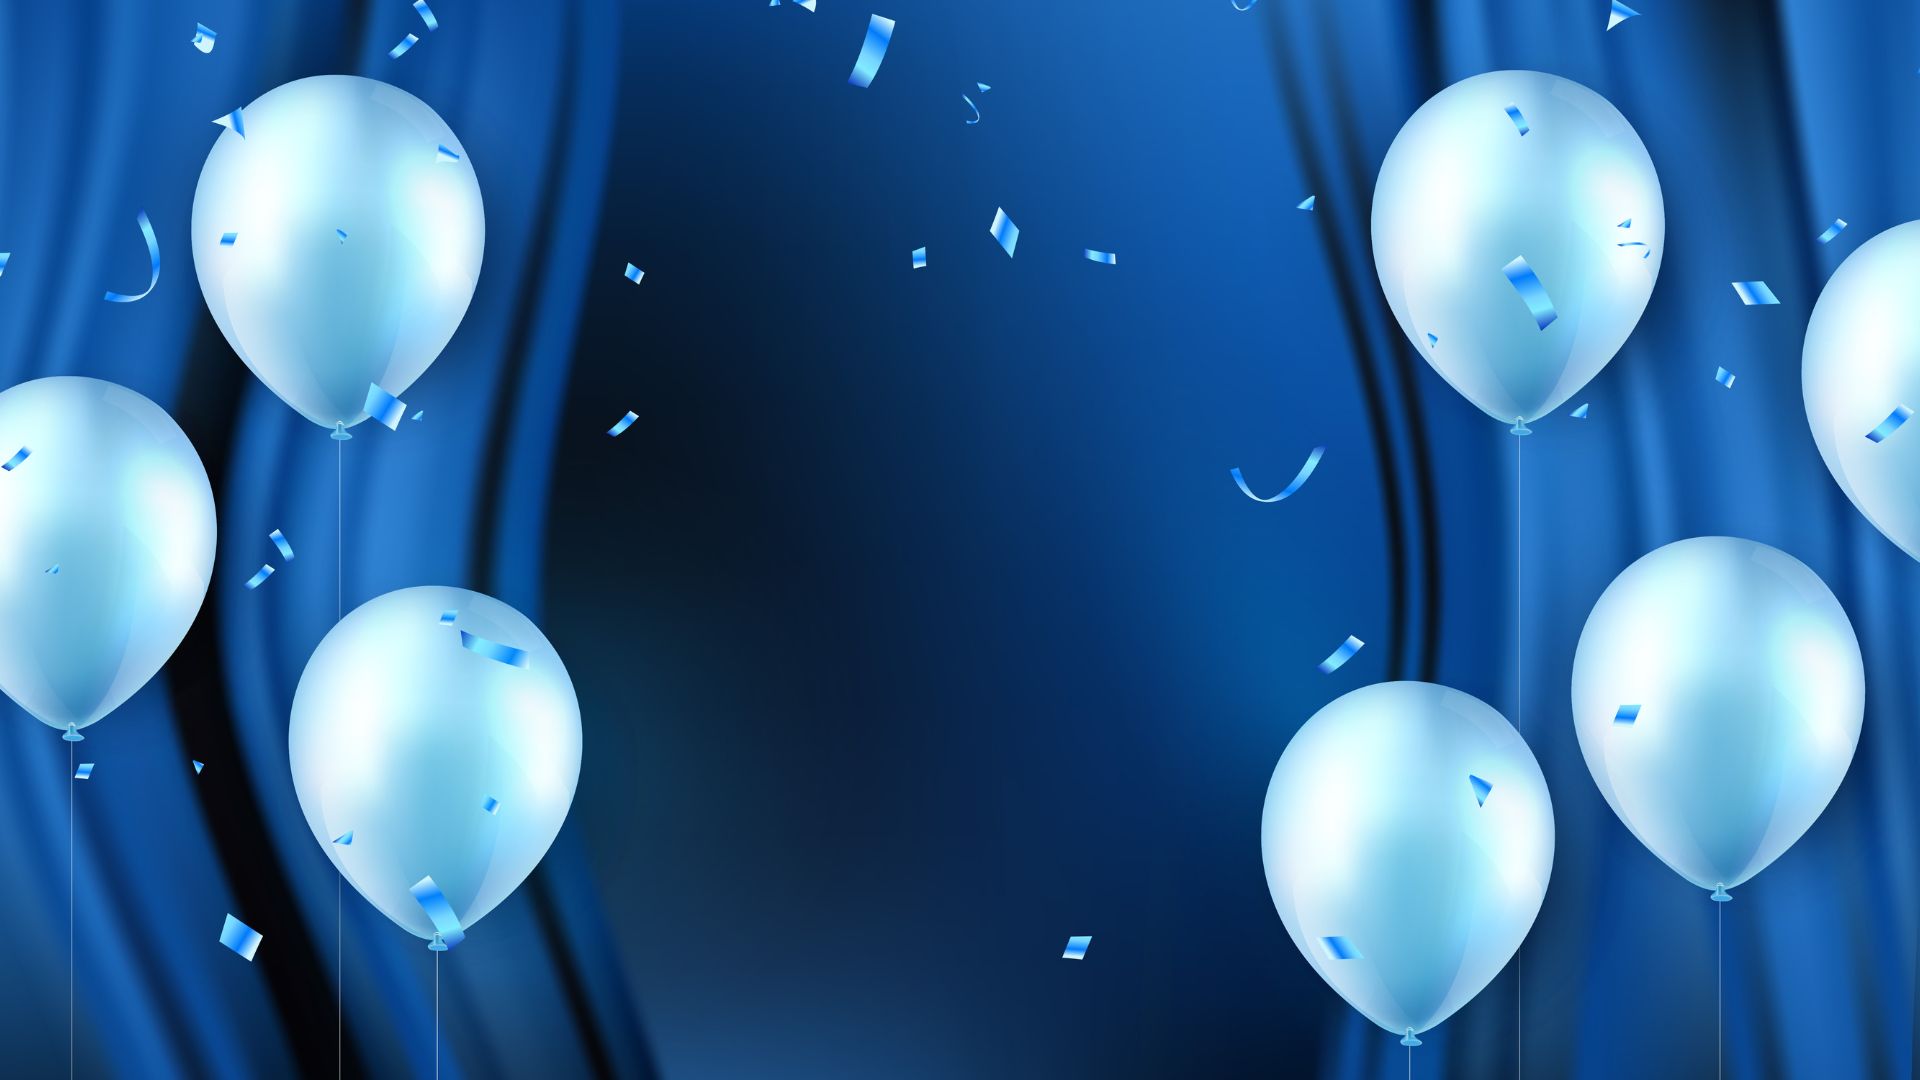 Imagem de fundo azul e no lado esquerdo e direito da foto, balões de aniversário na cor azul claro complemetam a foto.